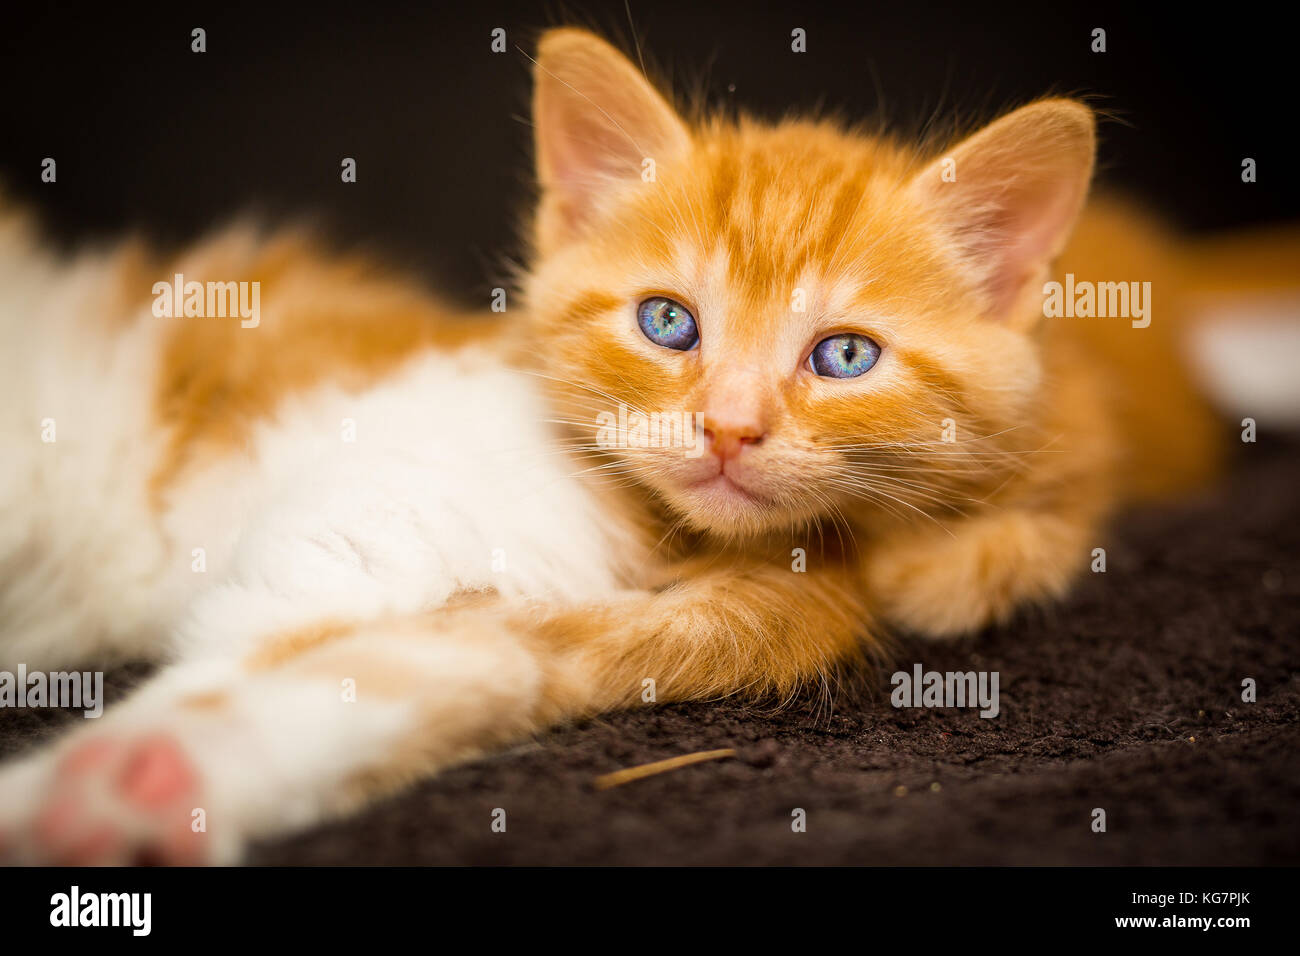 Lindo gatito de ojos azules Foto de stock